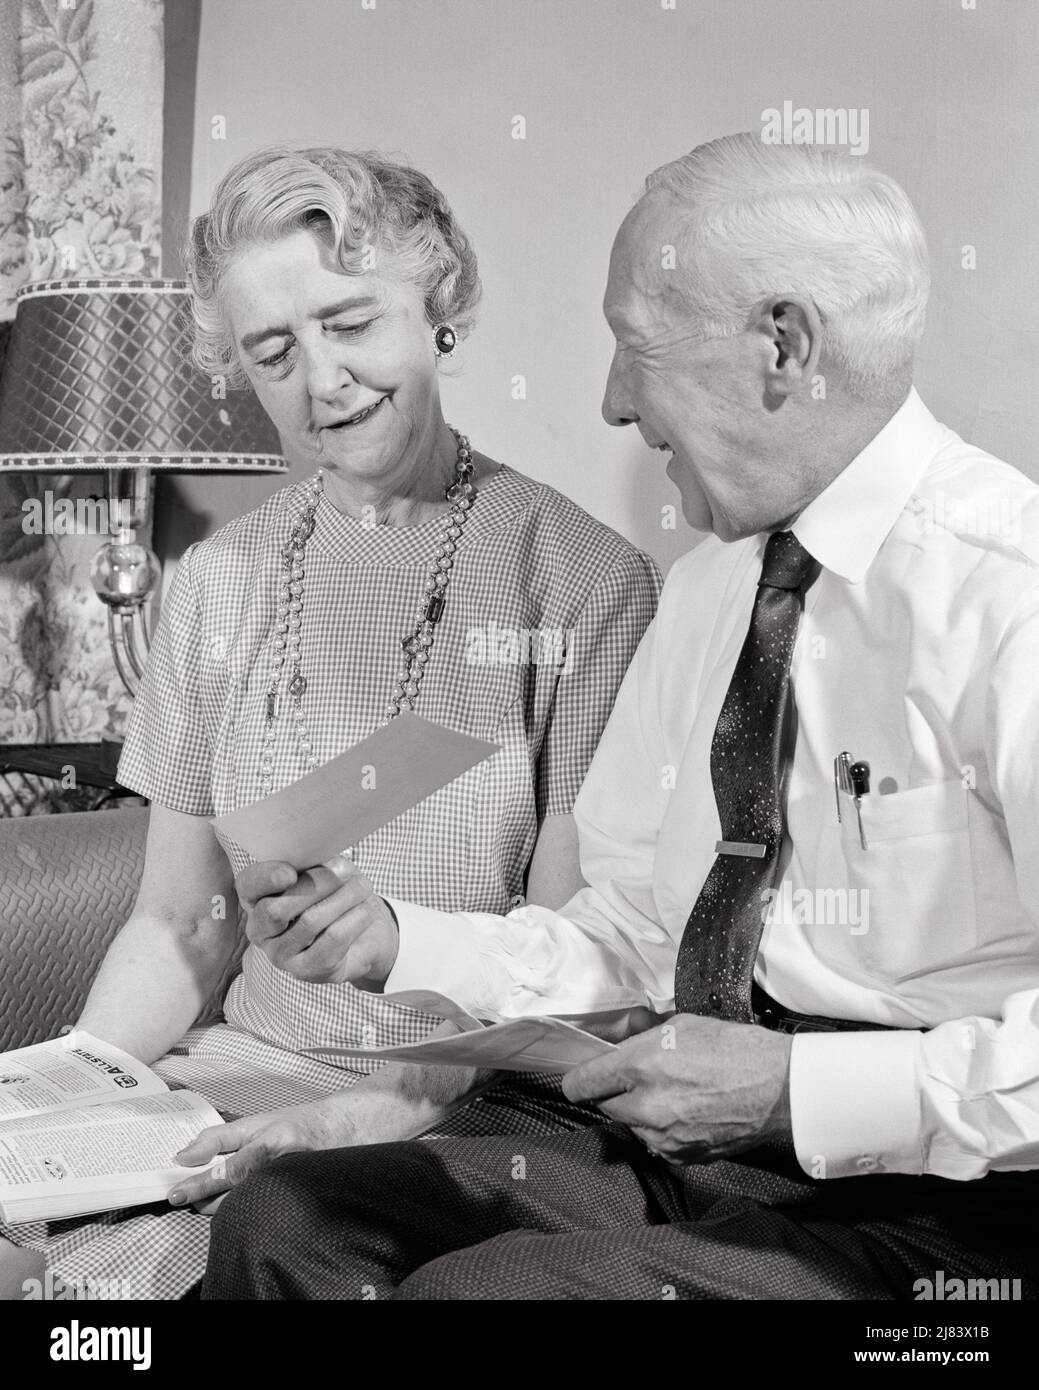 1950s coppia anziana seduta sul divano donna ha rivista in grembo uomo sorridente mostrando il suo assegno che ha appena ricevuto IN MAIL - S8291 HAR001 HARS SODDISFAZIONE ANZIANO DONNE SPOSATE MOSTRANDO CONIUGE MARITI HOME VITA COPIA SPAZIO AMICIZIA SIGNORE A MEZZA LUNGHEZZA PERSONE MASCHI SOLO PENSIONE ANZIANO UOMO B&W PARTNER GIRO ANZIANO DONNA RETIREE FELICITÀ VECCHIAIA OLDSTER ALLEGRO IN SU SORRISI ANZIANI PENSIONE GIOIOSO UOMO ANZIANO HA RICEVUTO LA SICUREZZA SOCIALE UNIONE MOGLI NERO E BIANCO ETNIA CAUCASICA HAR001 ANNI ALLA MODA Foto Stock